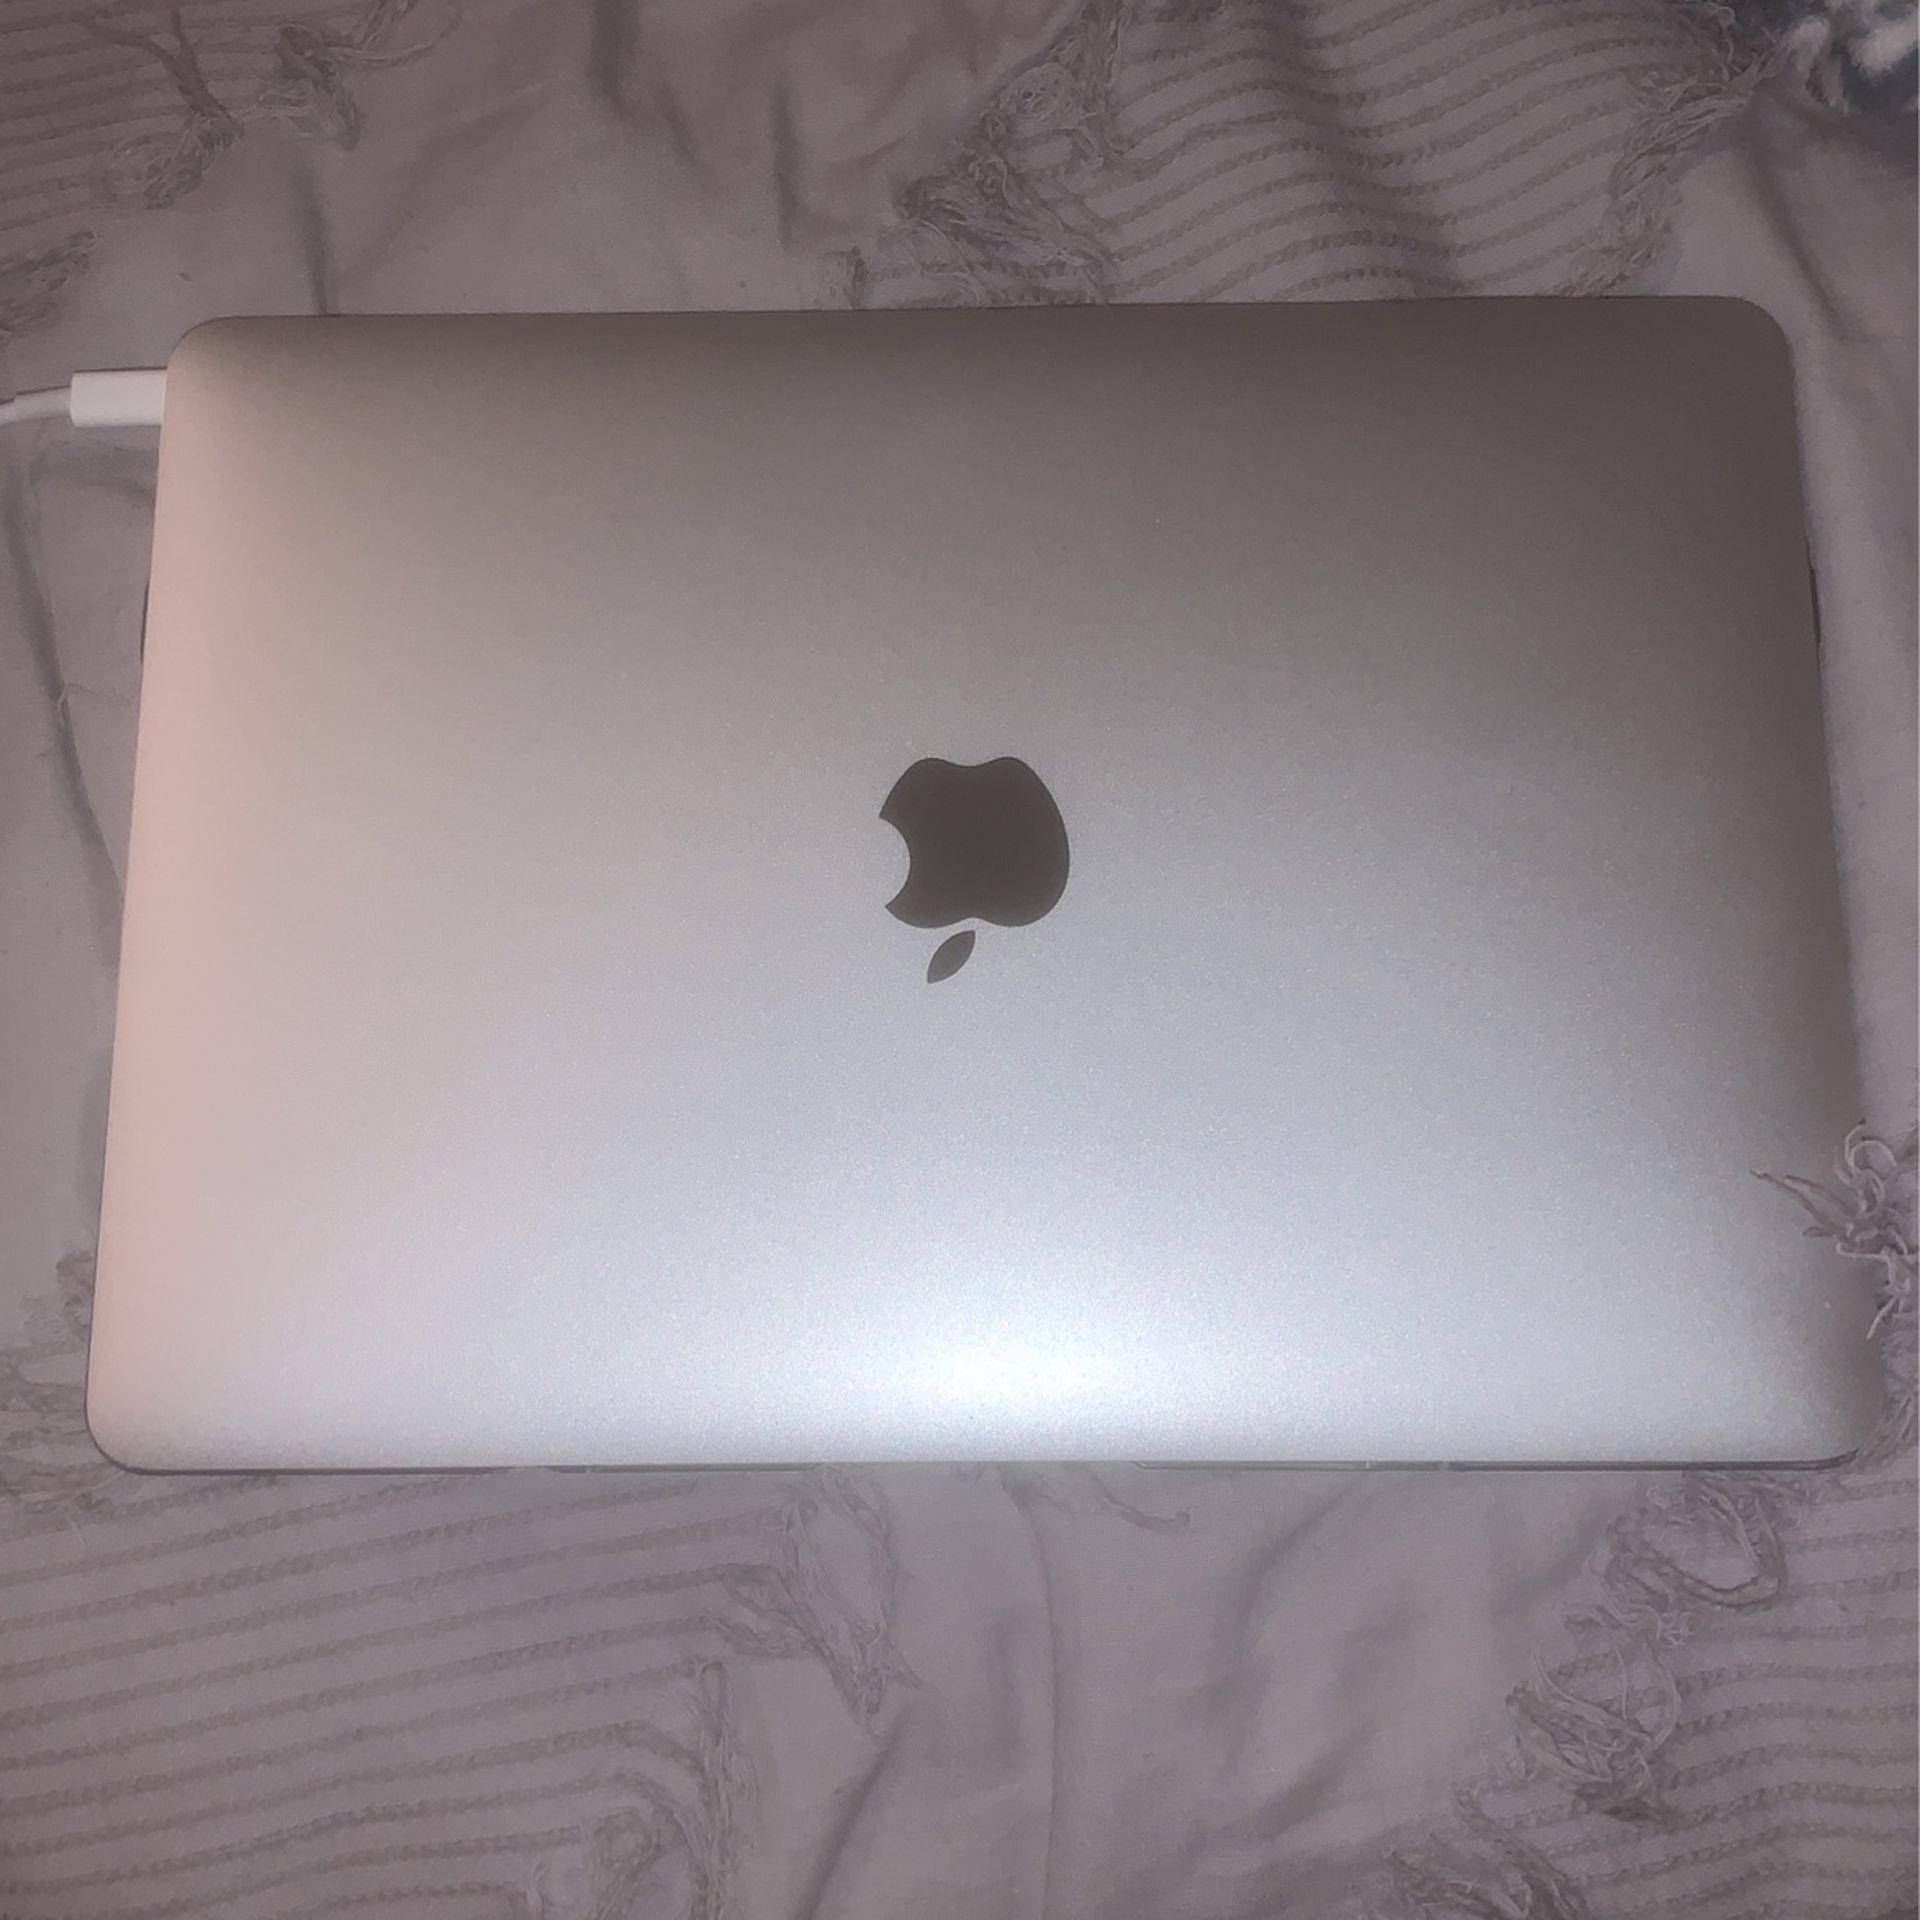 12-Inch Retina MacBook 2015